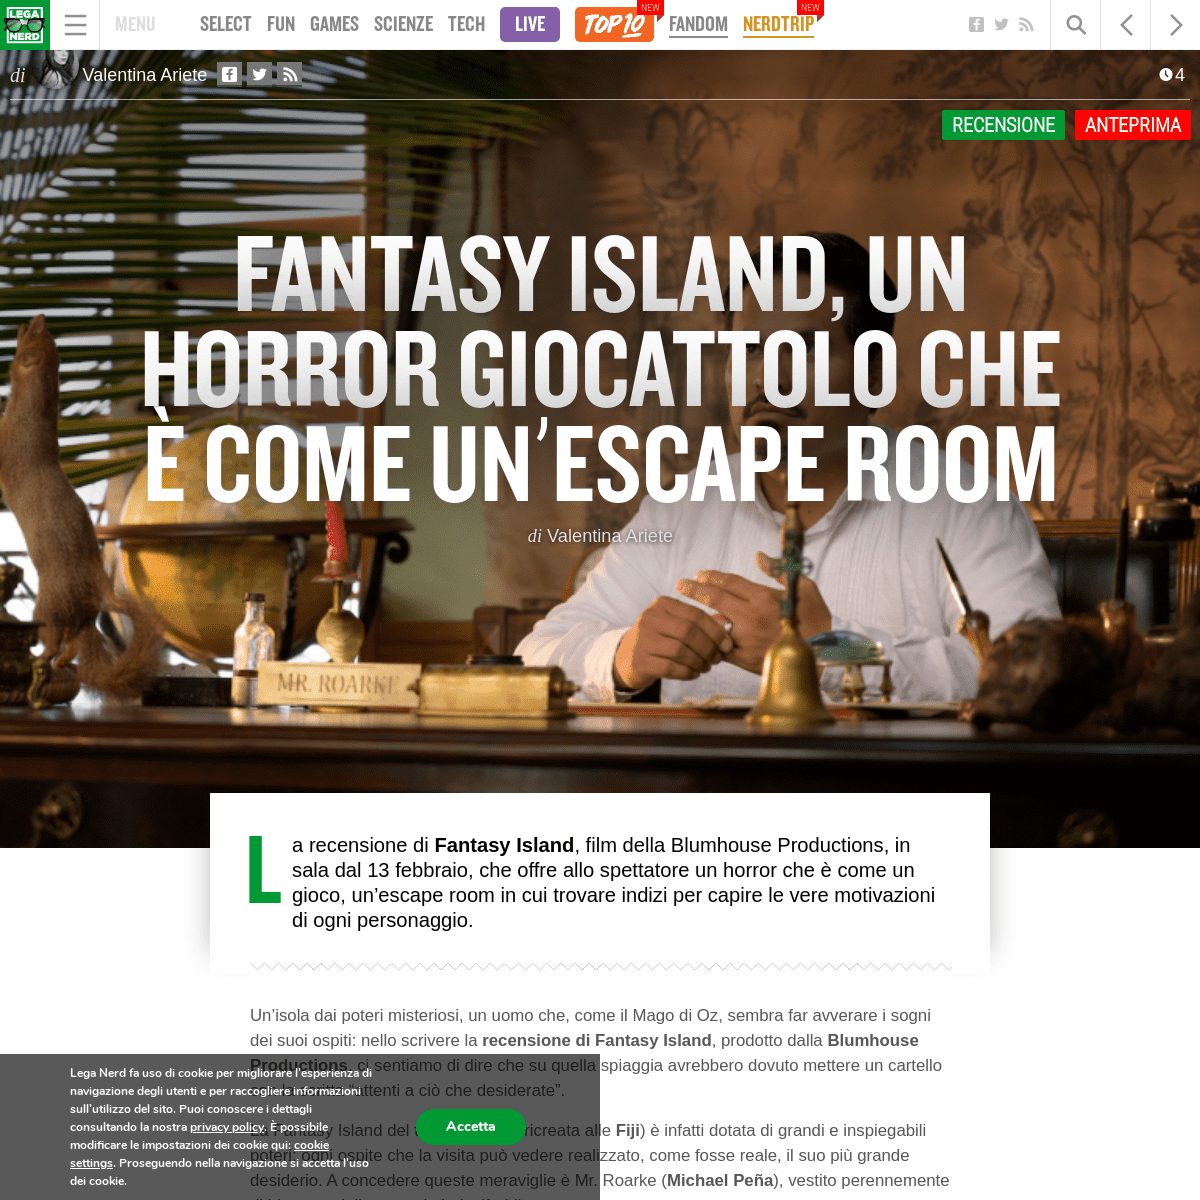 A complete backup of leganerd.com/2020/02/13/fantasy-island-un-horror-giocattolo-che-e-come-unescape-room/